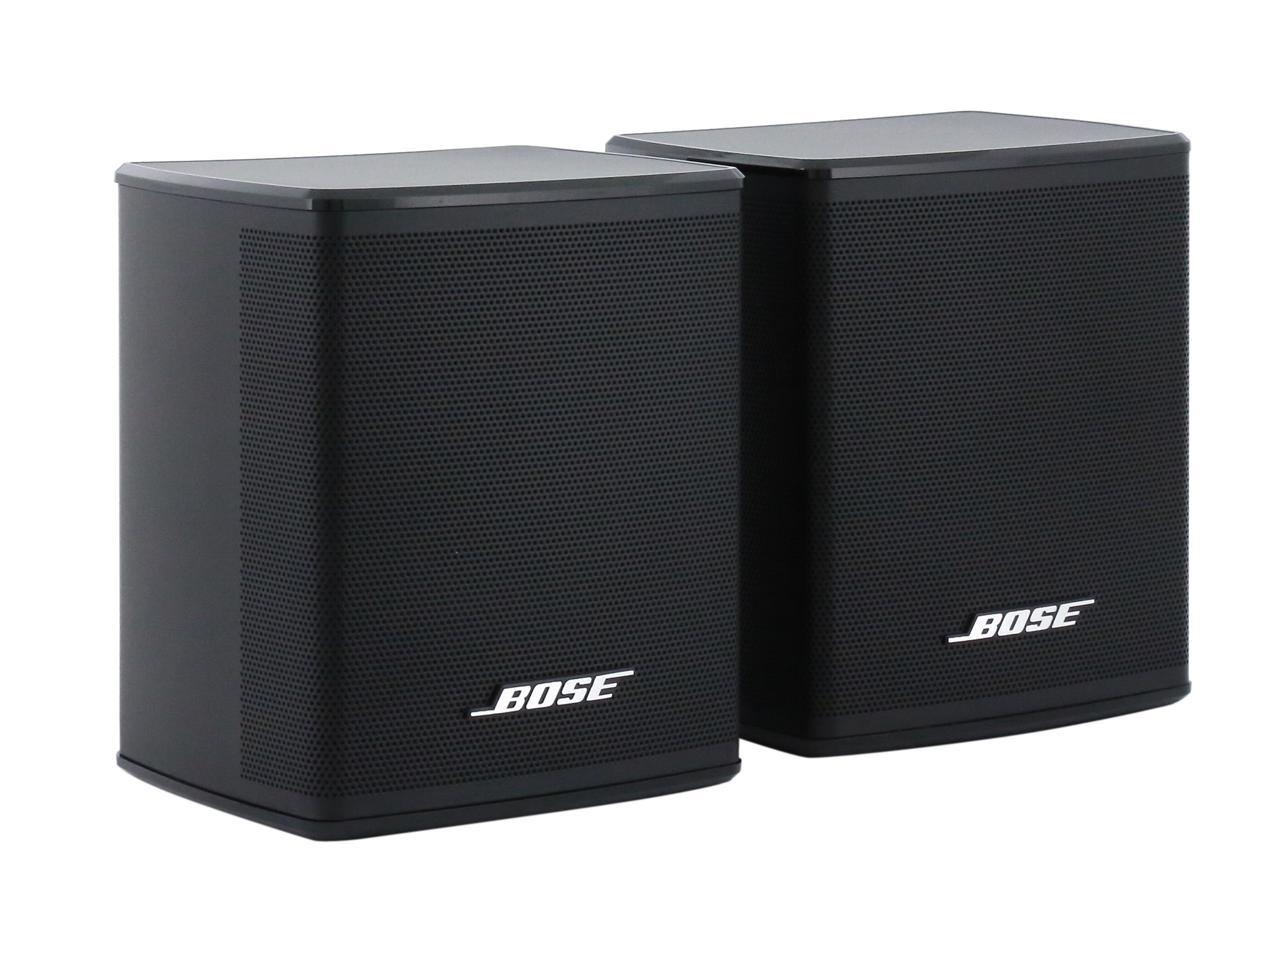 Bose - Surround Speakers 120-Watt Wireless Home Theater Speakers (Pair) -  Black